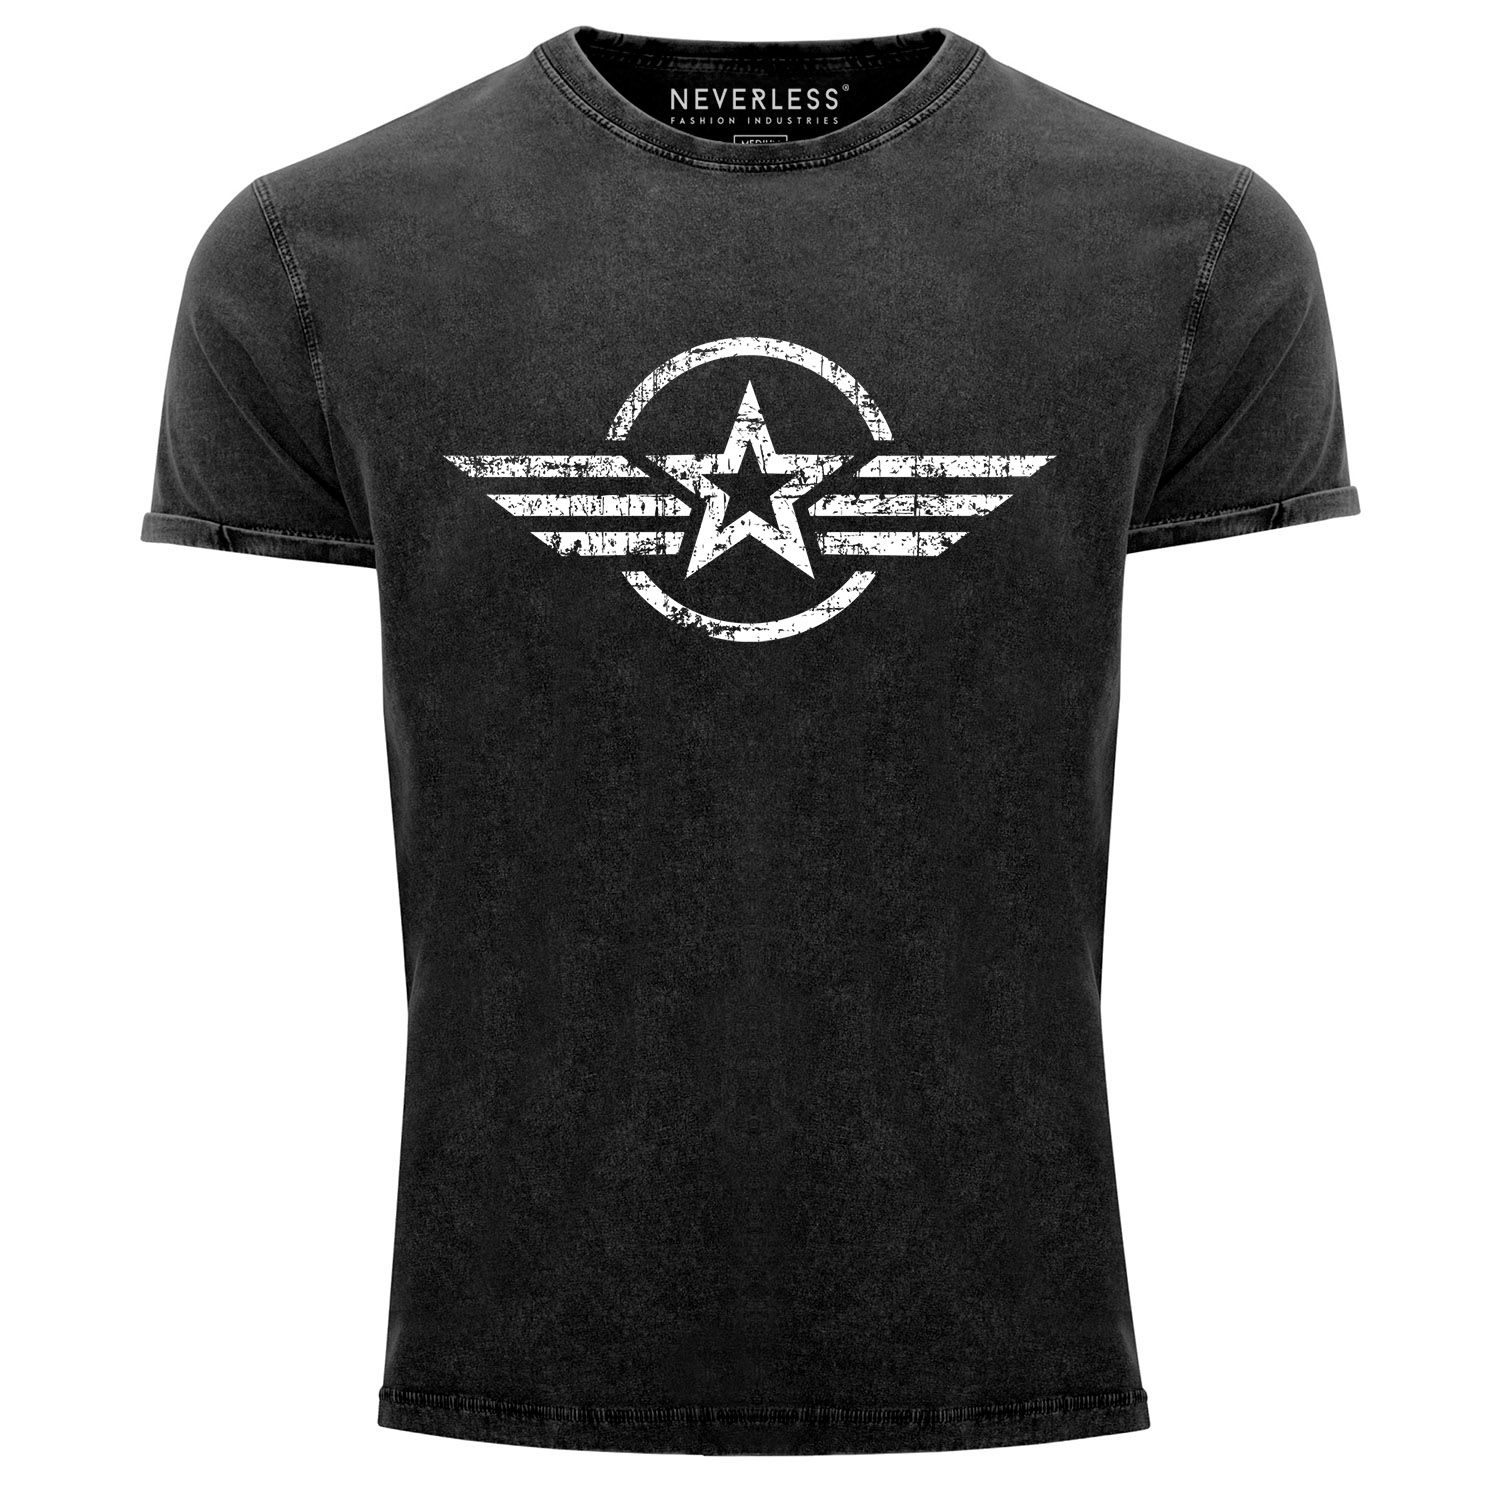 Herren Vintage Shirt Airforce Stern Army Military Aufdruck Printshirt T-Shirt Aufdruck Used Look Slim Fit Neverless®